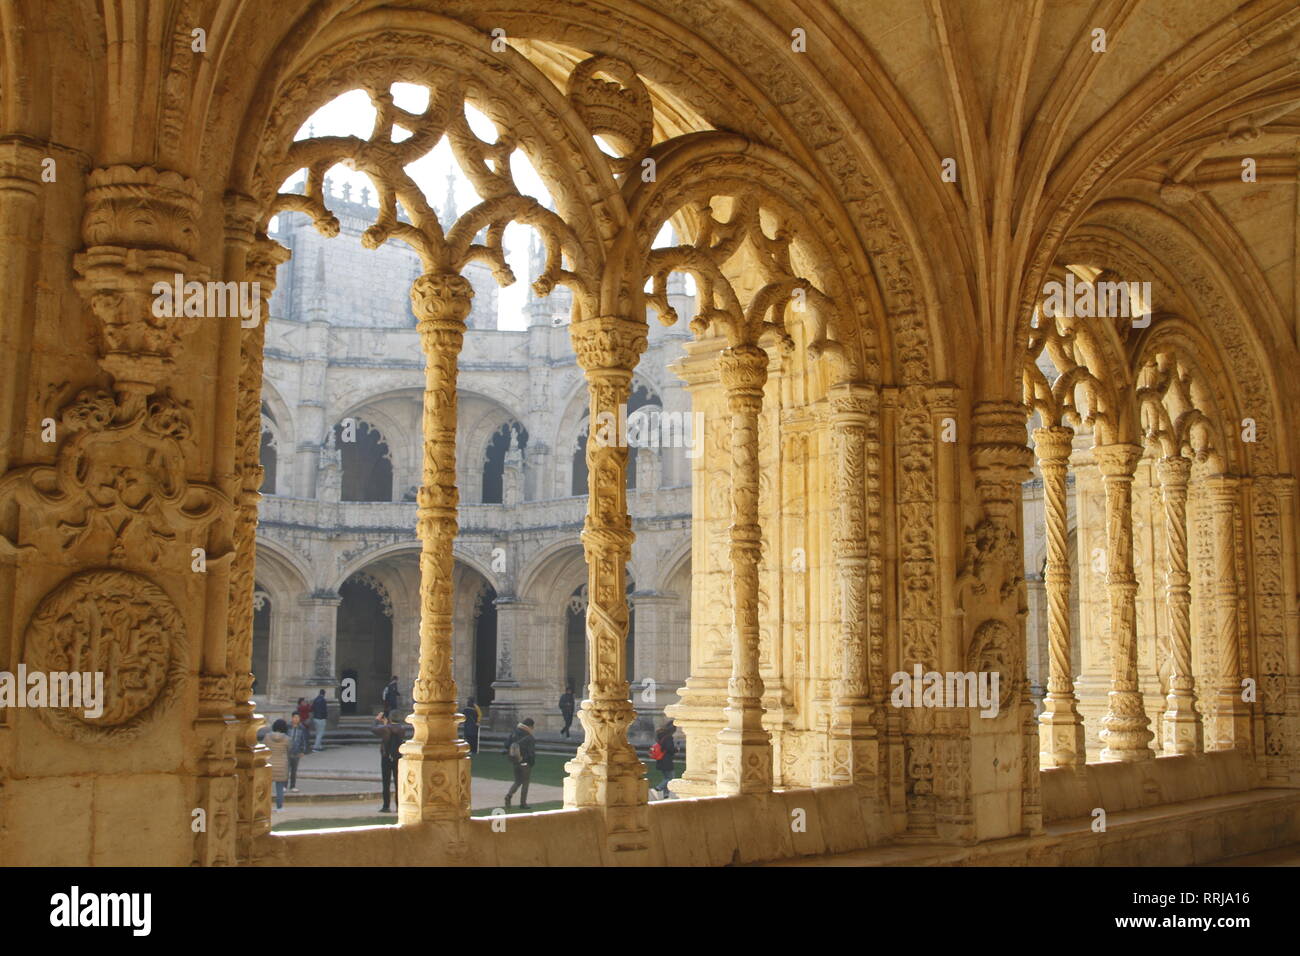 Maravillosamente intrincada arcos y columnas dentro de los claustros de Belem, el monasterio de Los Jerónimos, Lisboa, Portugal Foto de stock